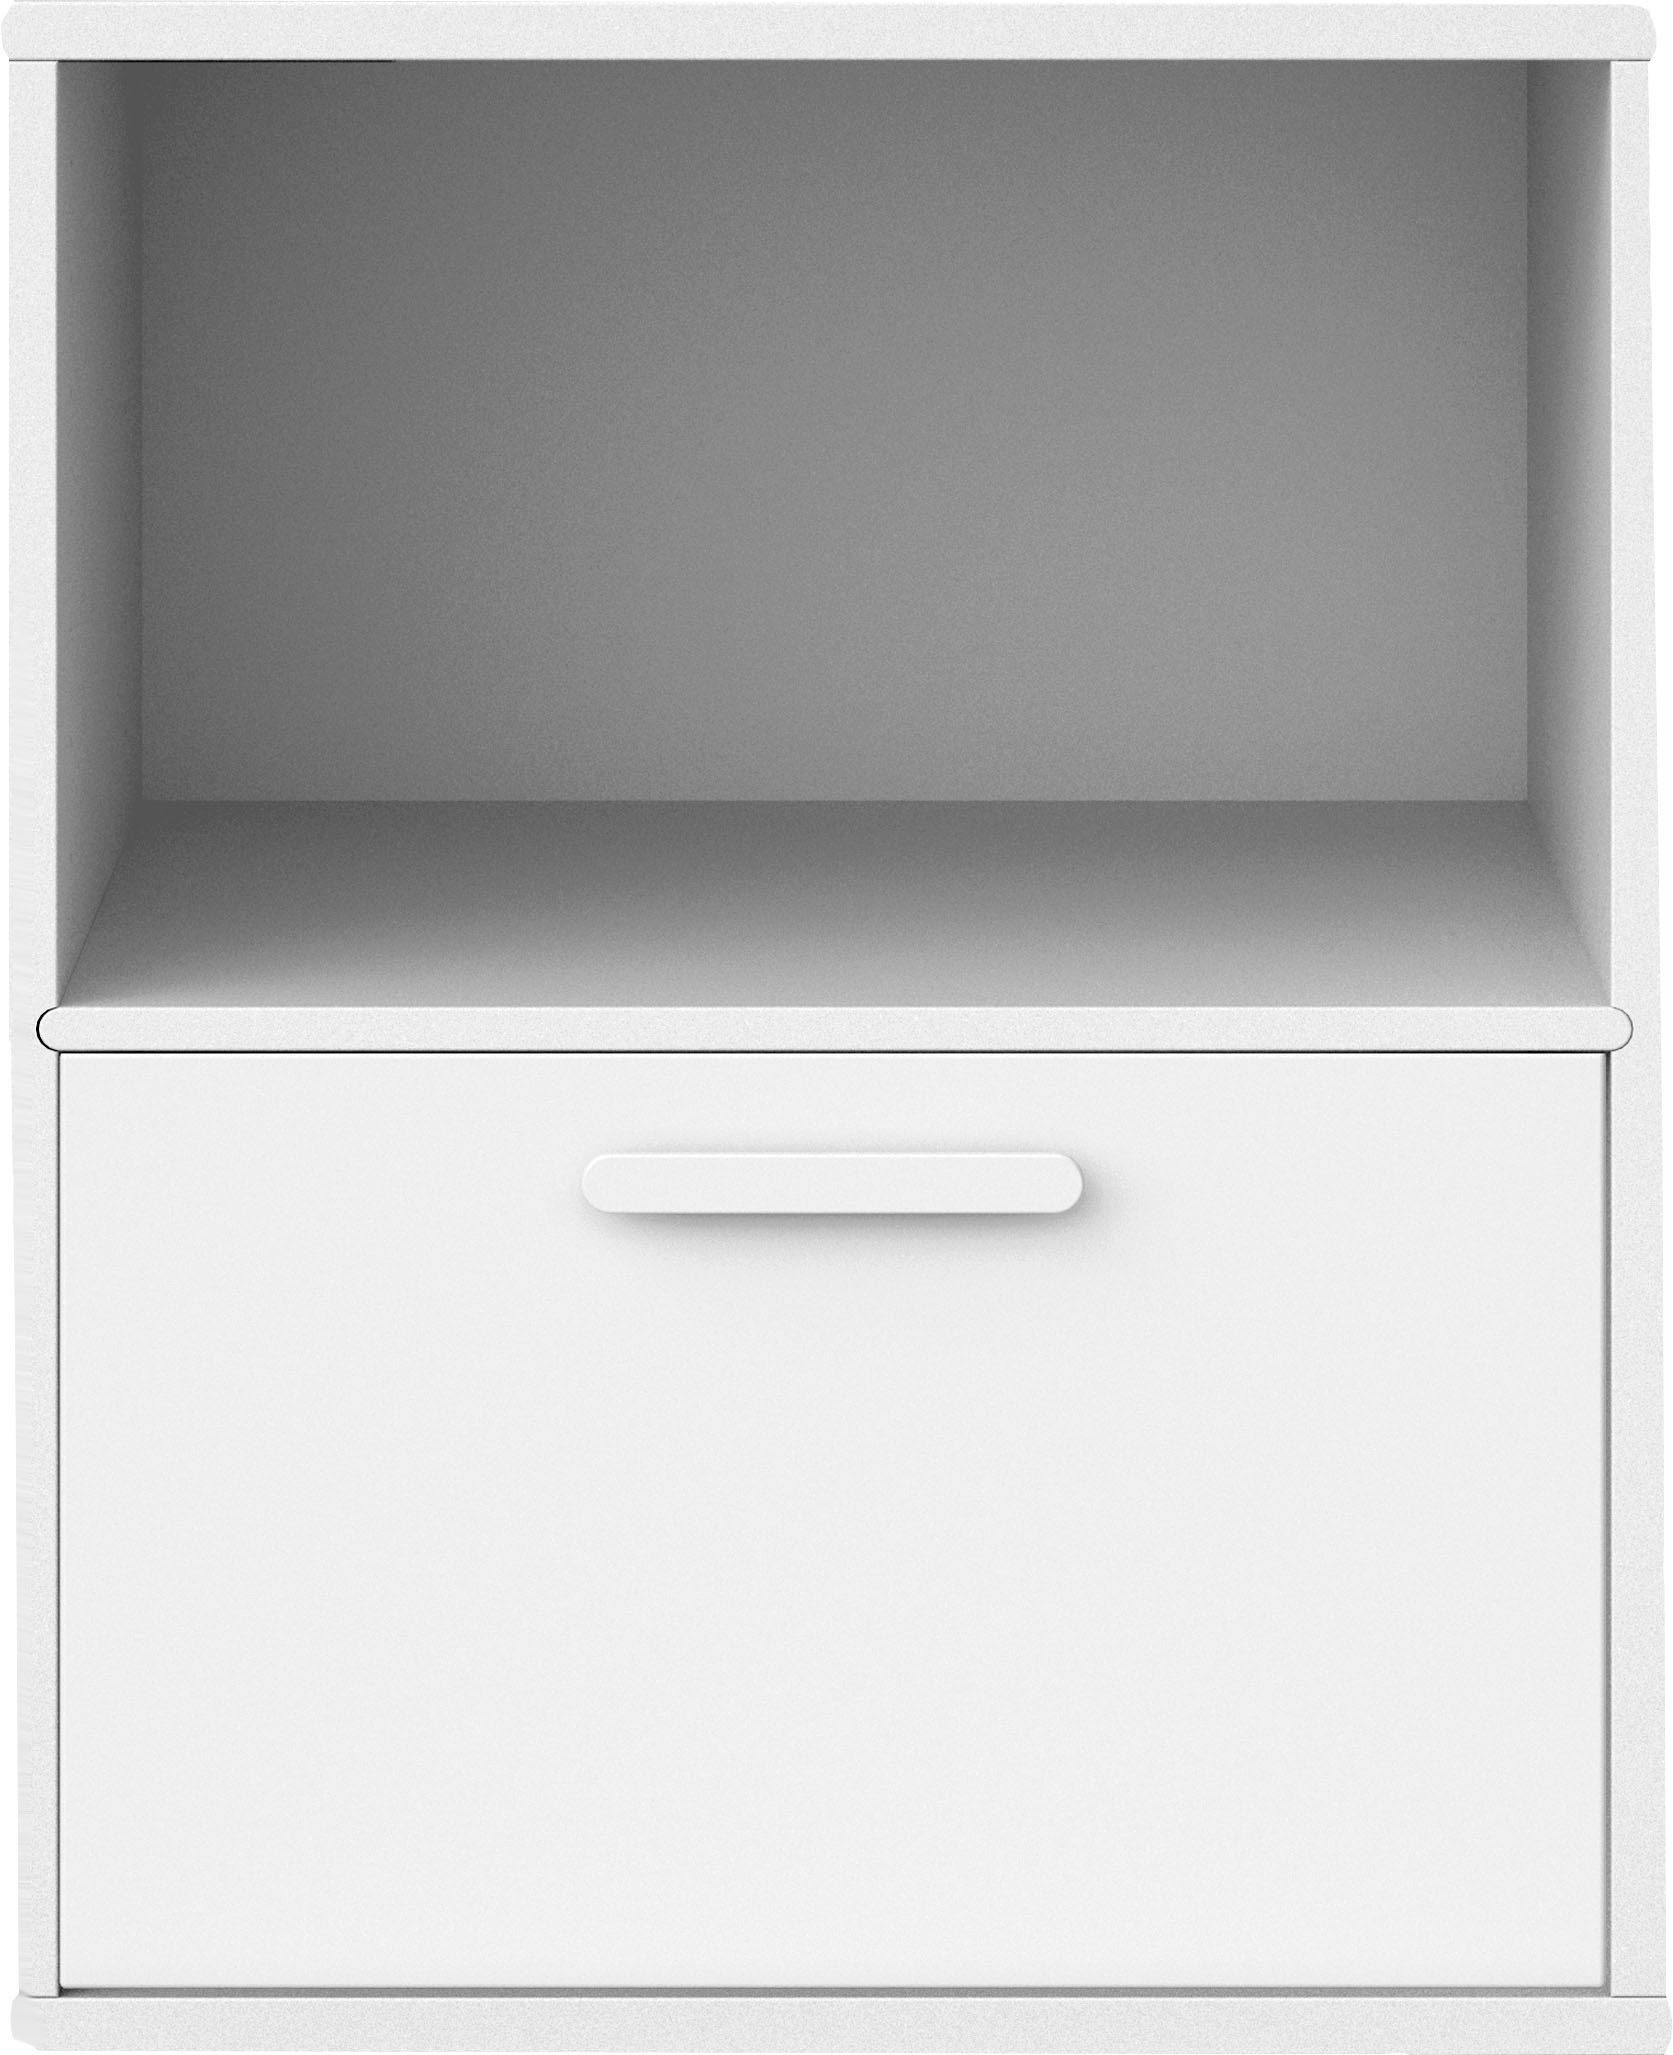 Hammel Furniture Regal Keep Weiß festem mit Weiß 003, Möbelserie Wandmontage, Hammel by Regalboden, | Breite flexible 45,4cm, Modul